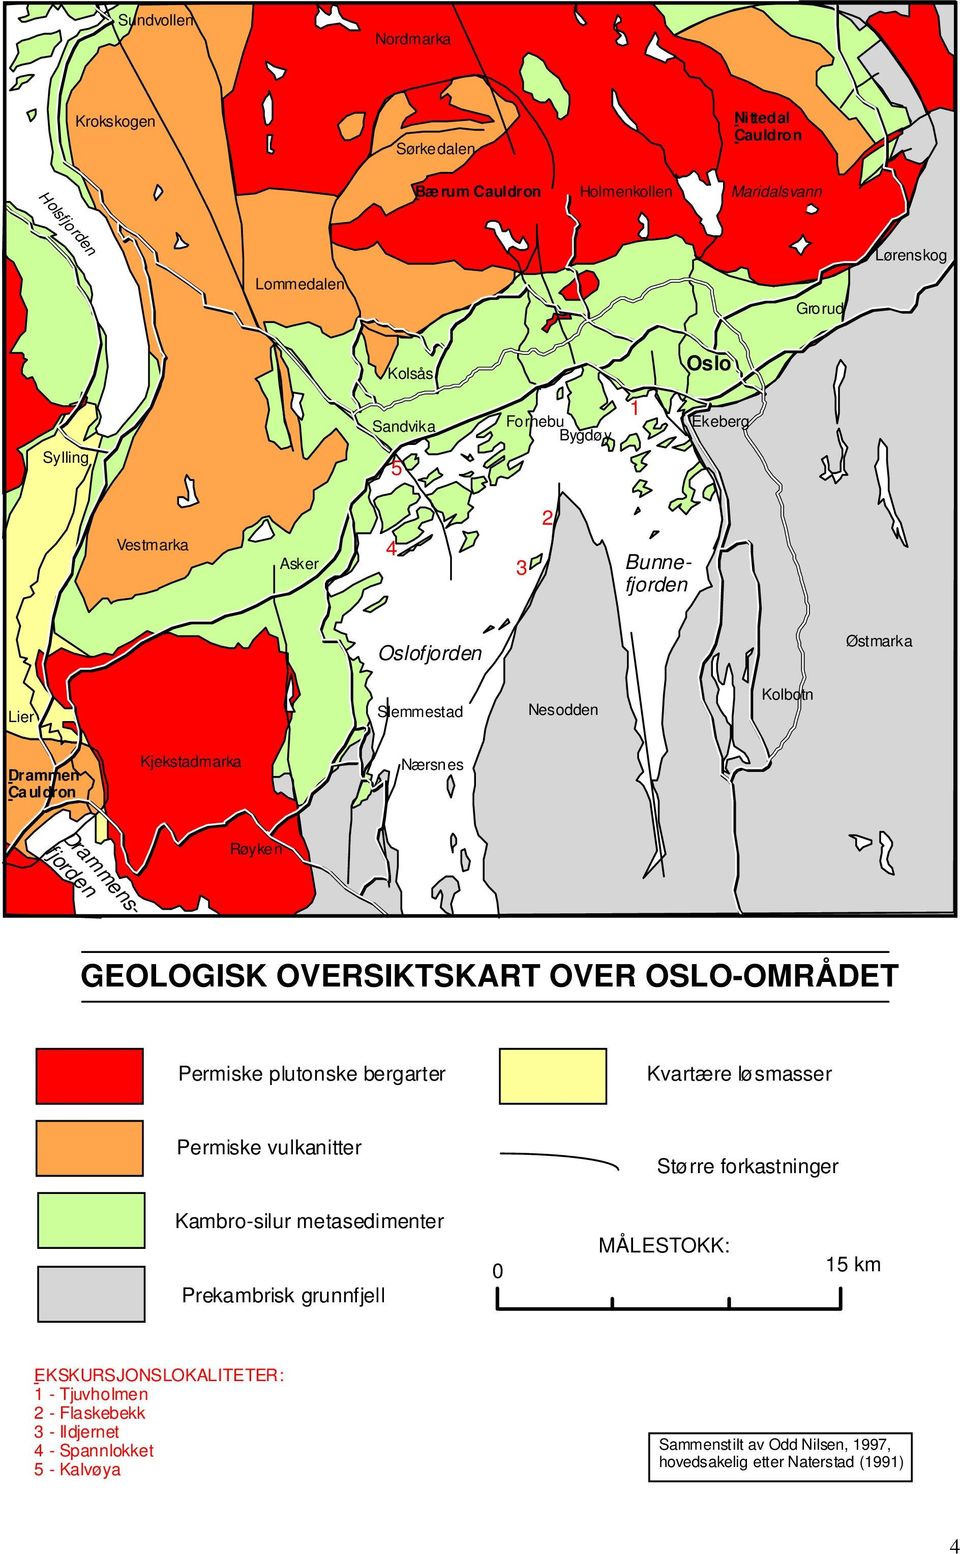 GEOLOGISK OVERSIKTSKART OVER OSLO-OMRÅDET Permiske plutonske bergarter Kvartære løsmasser Permiske vulkanitter Kambro-silur metasedimenter Prekambrisk grunnfjell Større